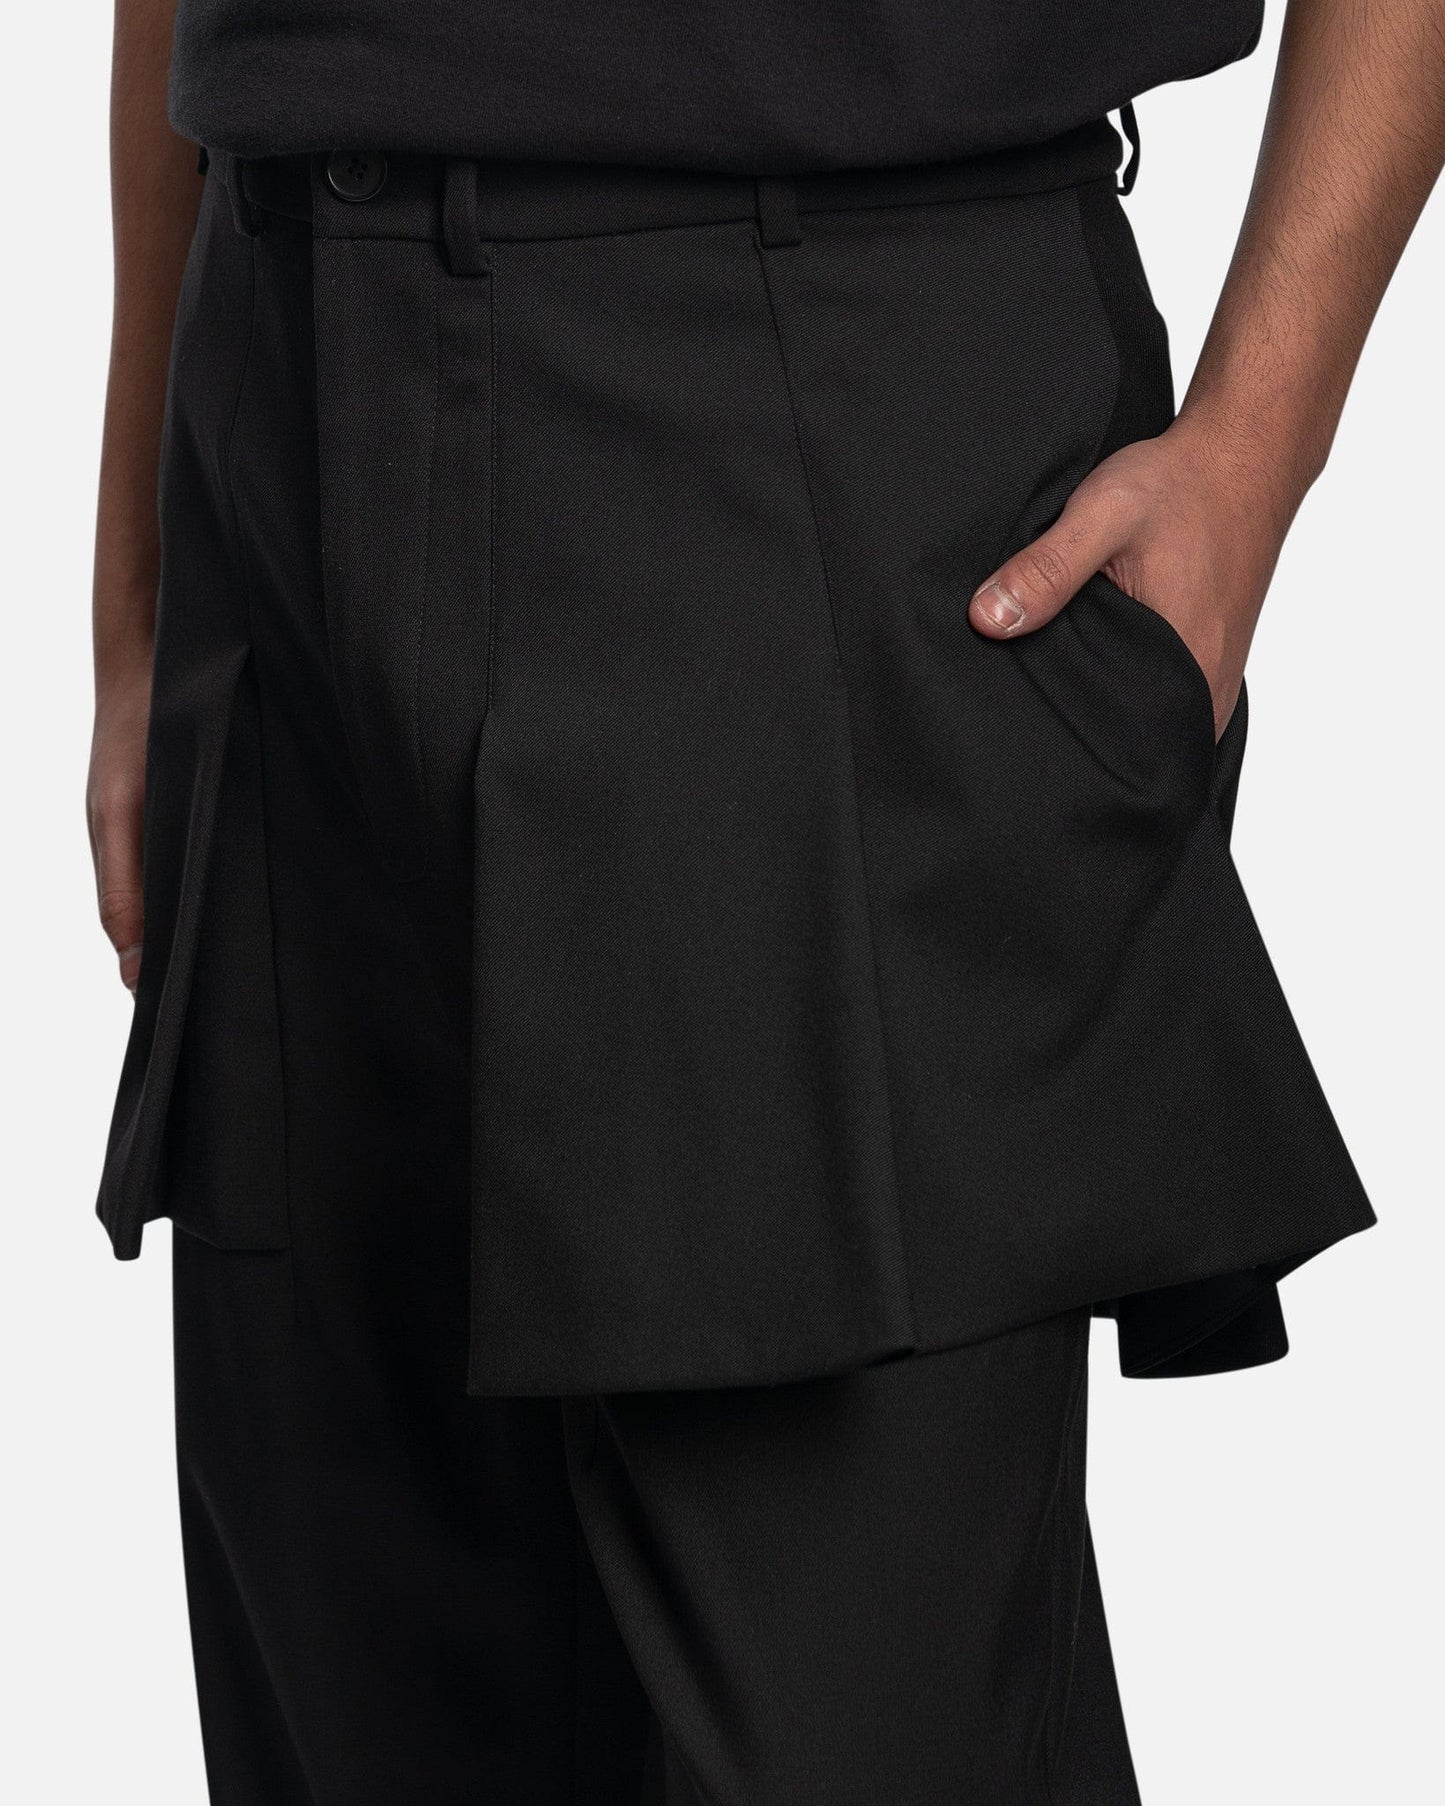 Goomheo Men's Pants Haroon Skirt Trousers in Aubergine Black